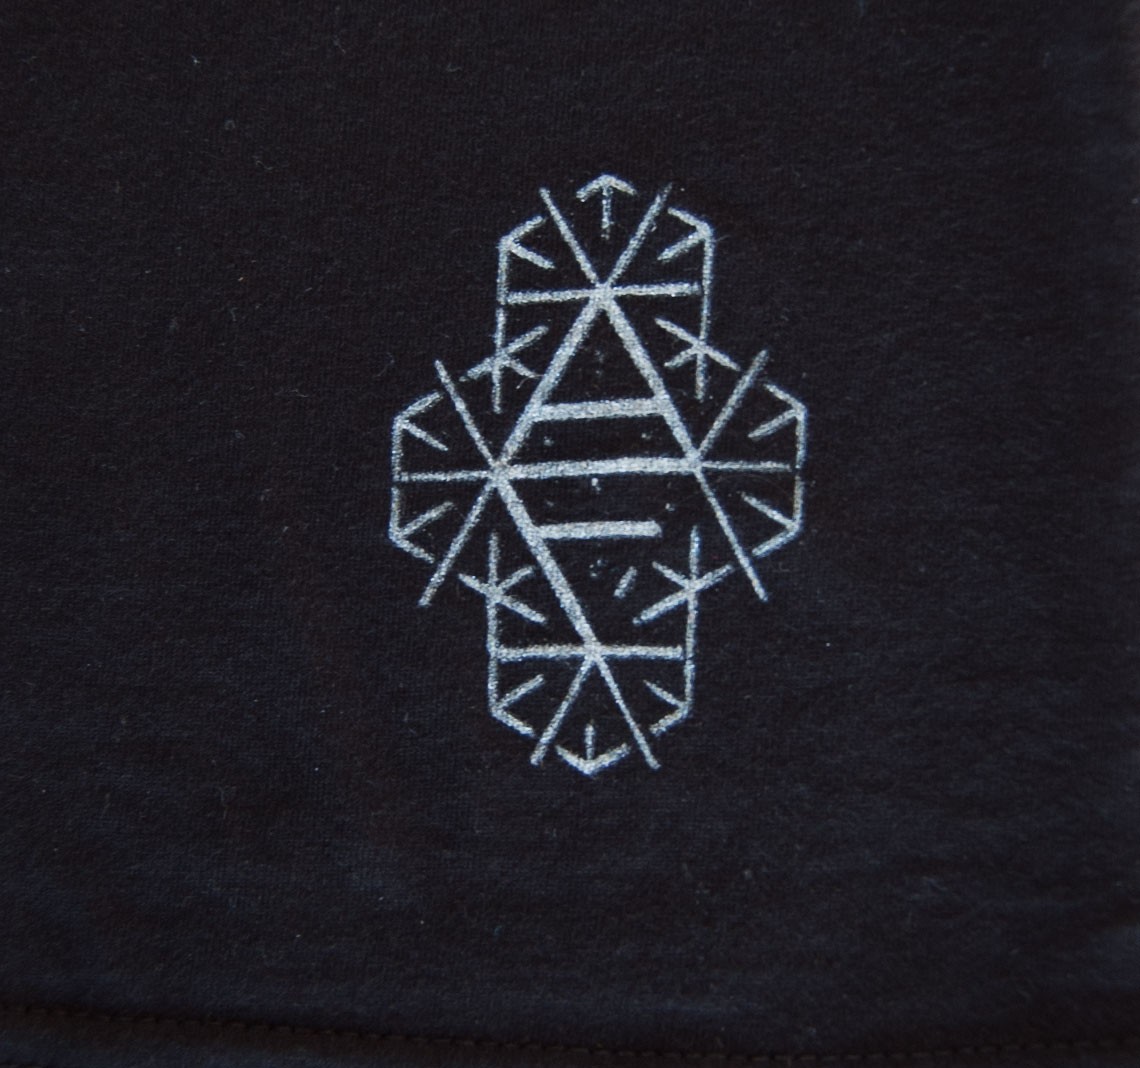 Reflektor T-Shirt (w/digital download) - Black - T-Shirts - Apparel ...